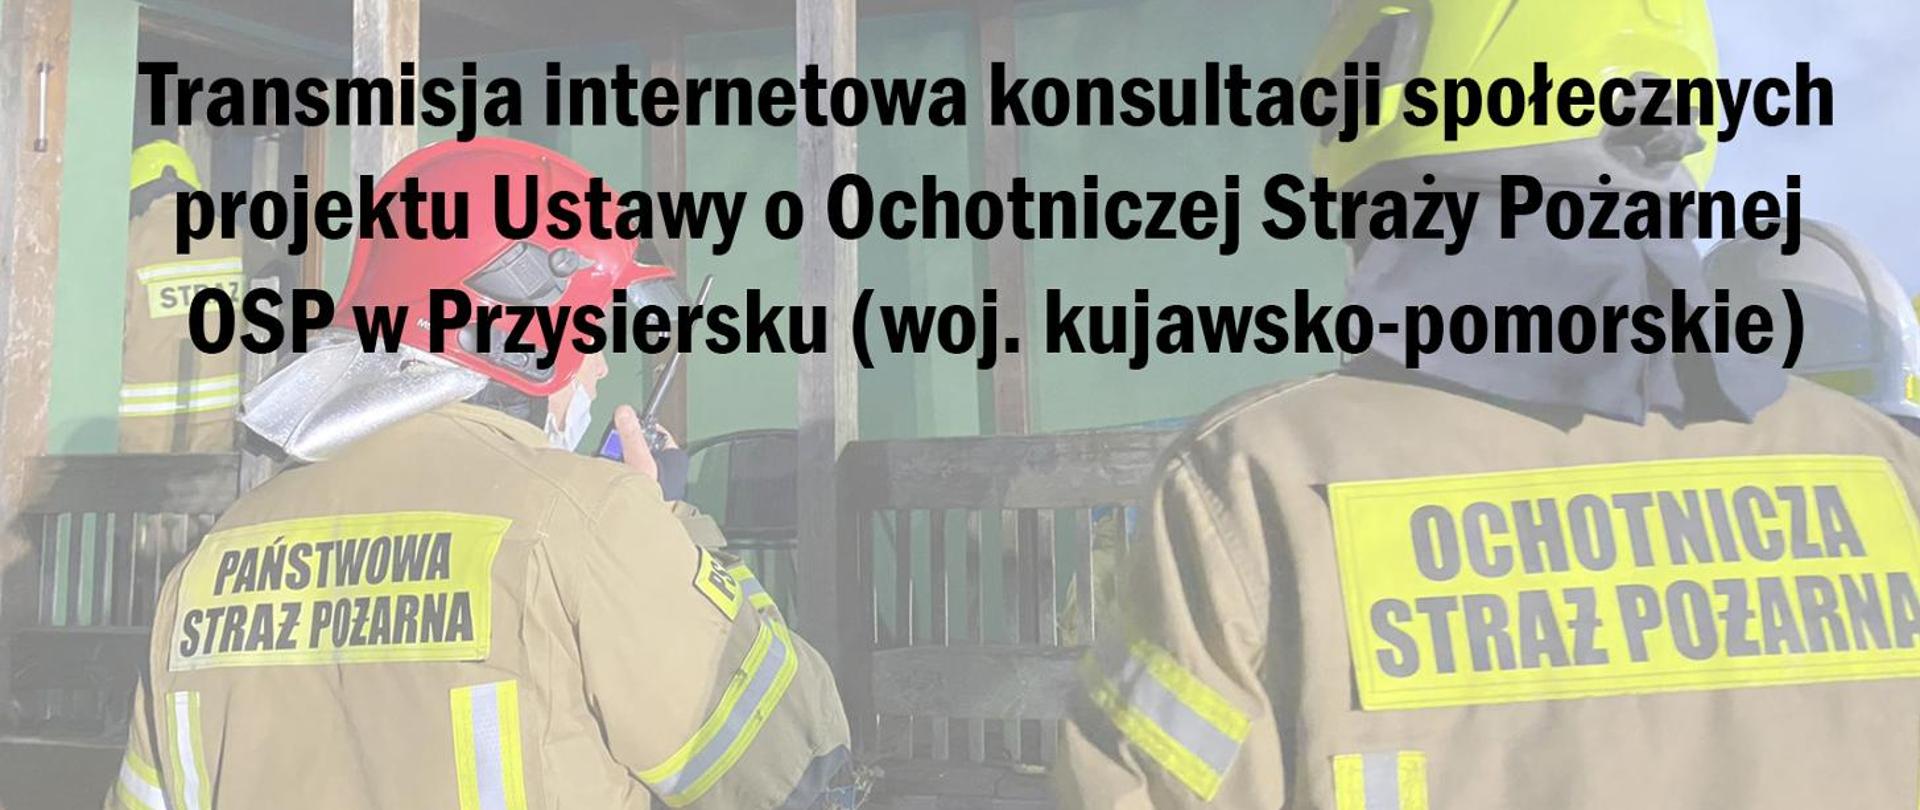 Zdjęcie przedstawia strażaka oraz druha OSP. Na zdjęciu jest również tytuł artykułu.